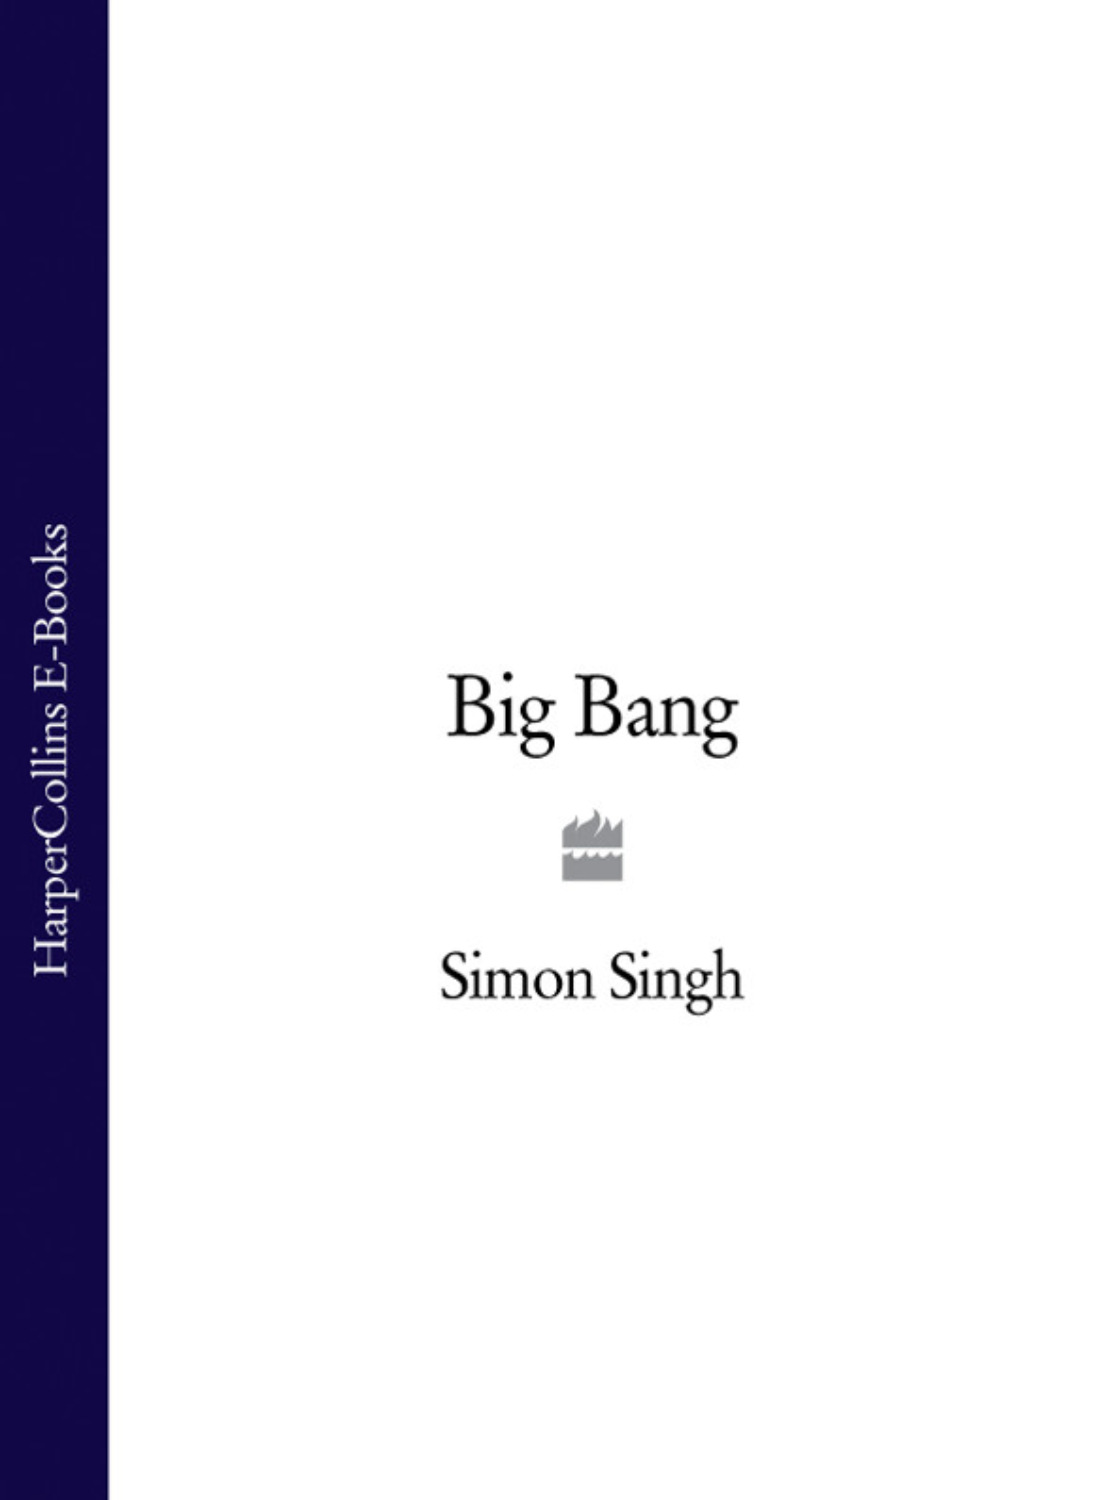 Big Bang Simon Singh Pdf